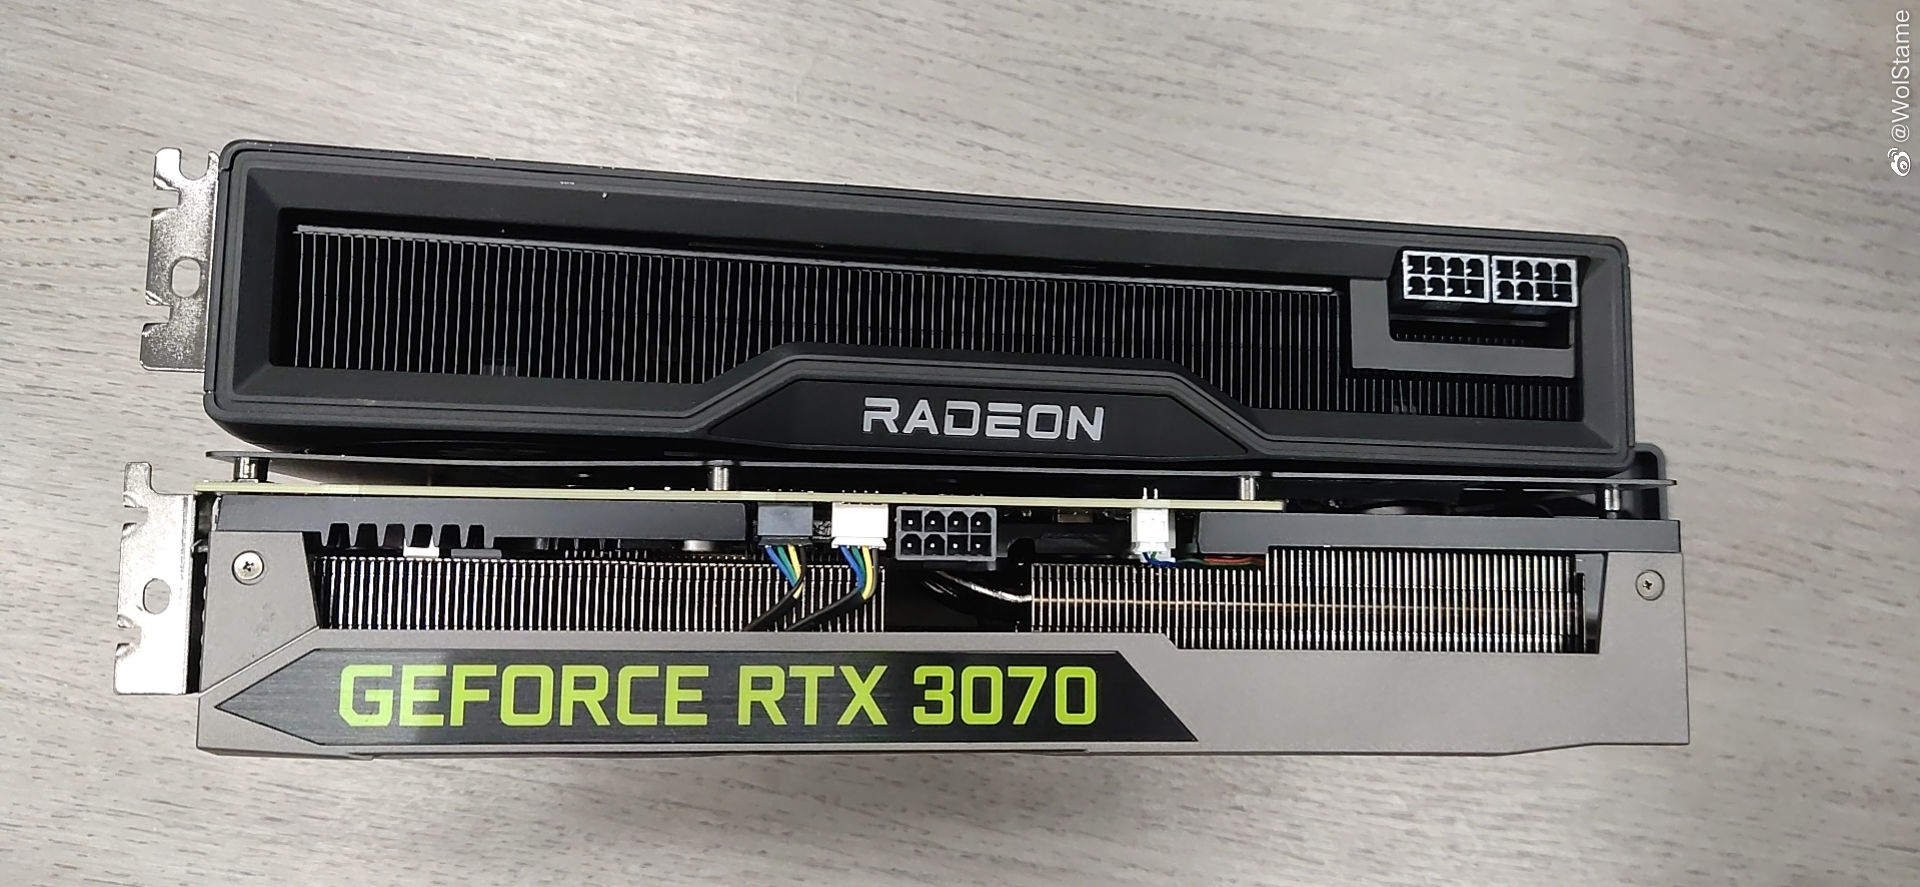 RX 6800 XT vs RTX 3070 vs RX 6750 XT